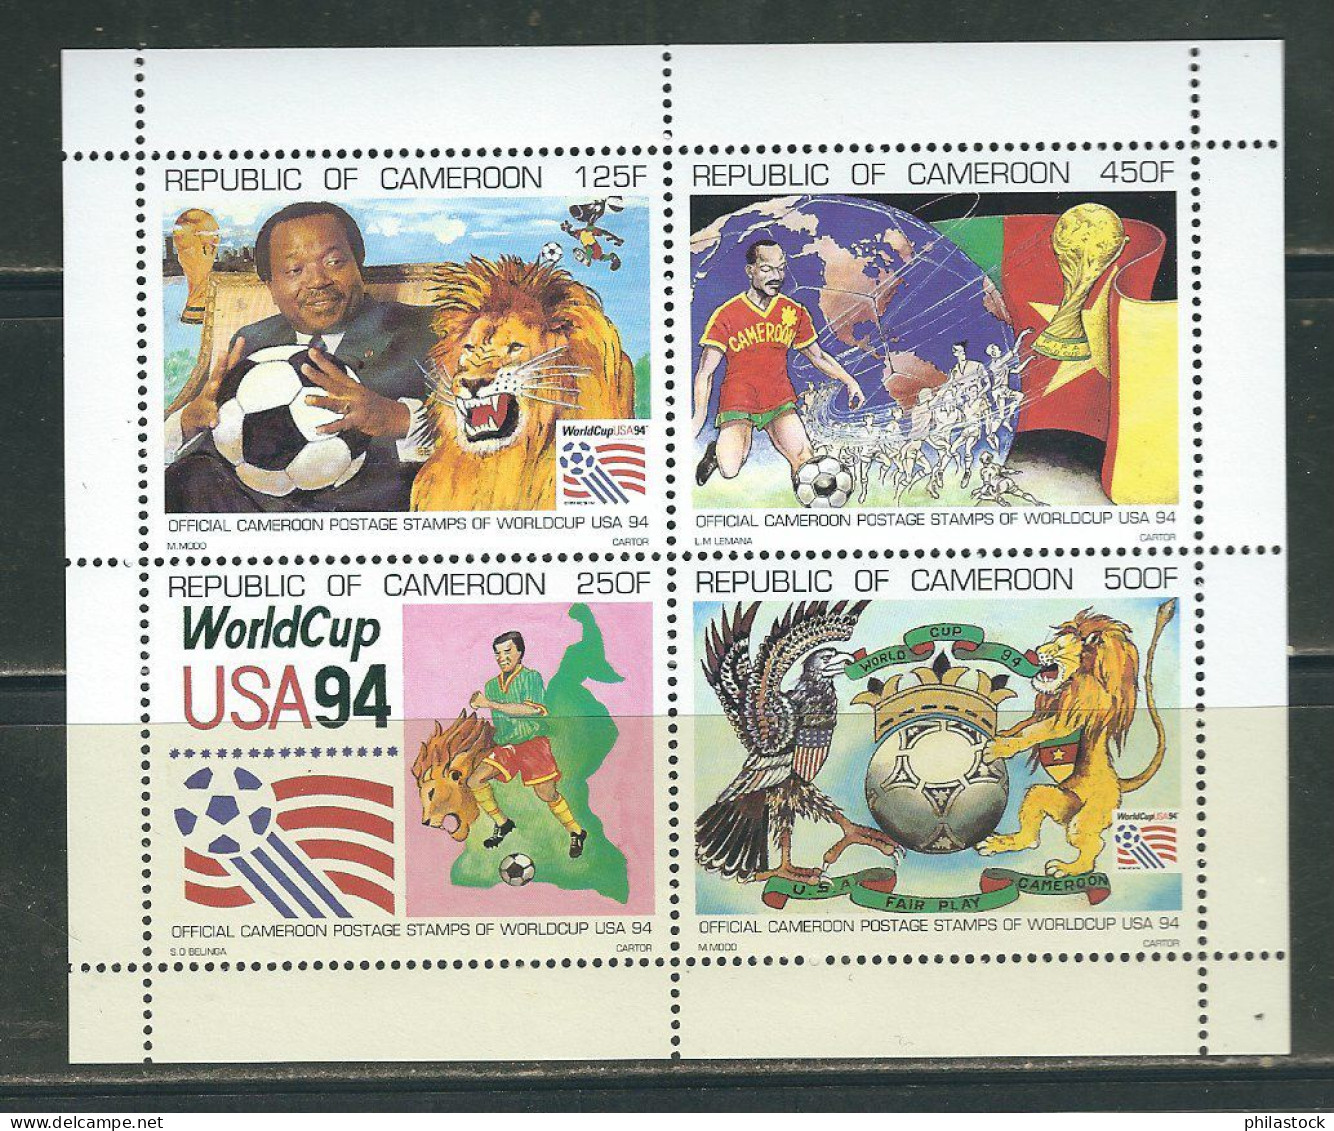 CAMEROUN Lot de timbres poste,+ BF + non-dentelés & épreuves d'artiste dans un classeur du ministère des Postes cameroun